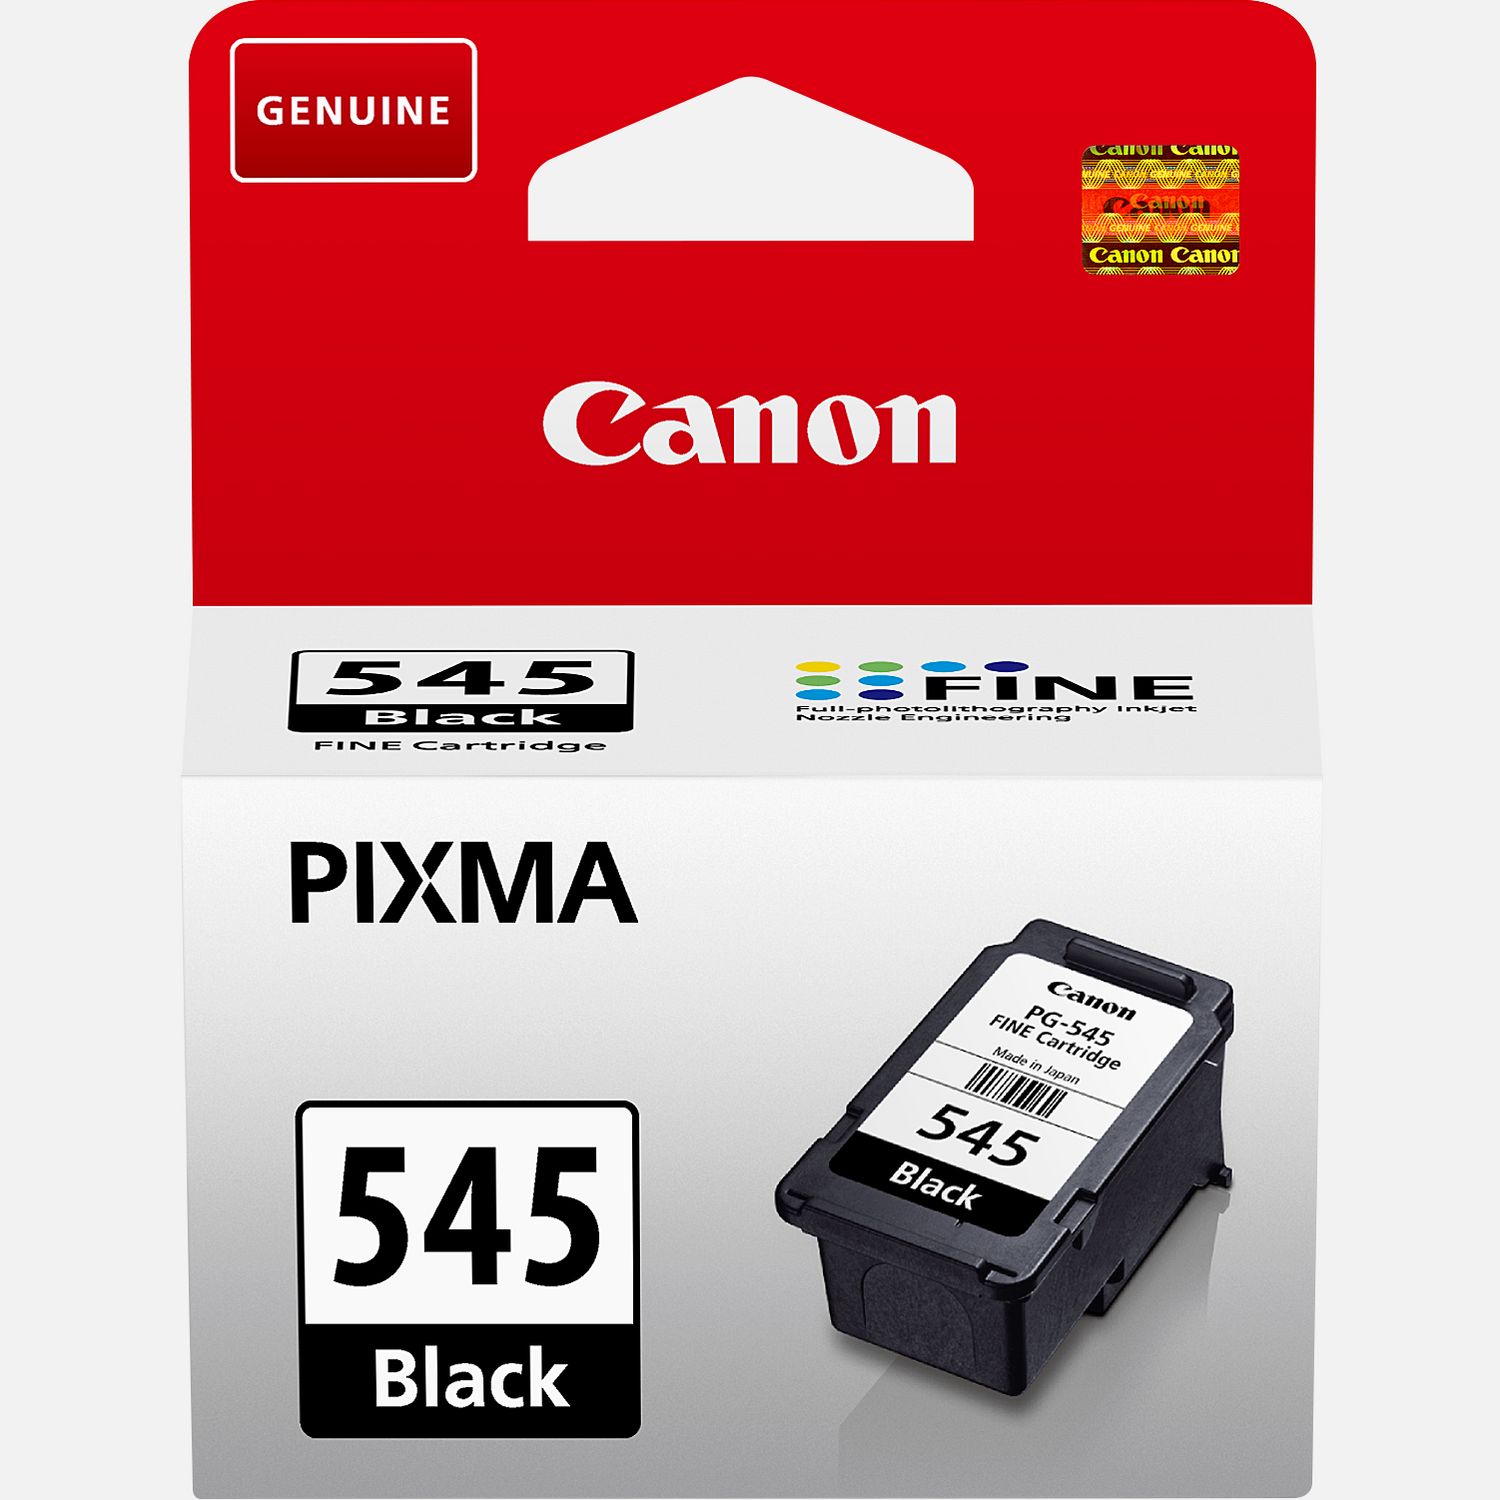 Canon MG 2550S Noire + Pack 2 Cartouches PG-545 / CL 546 - Noir +